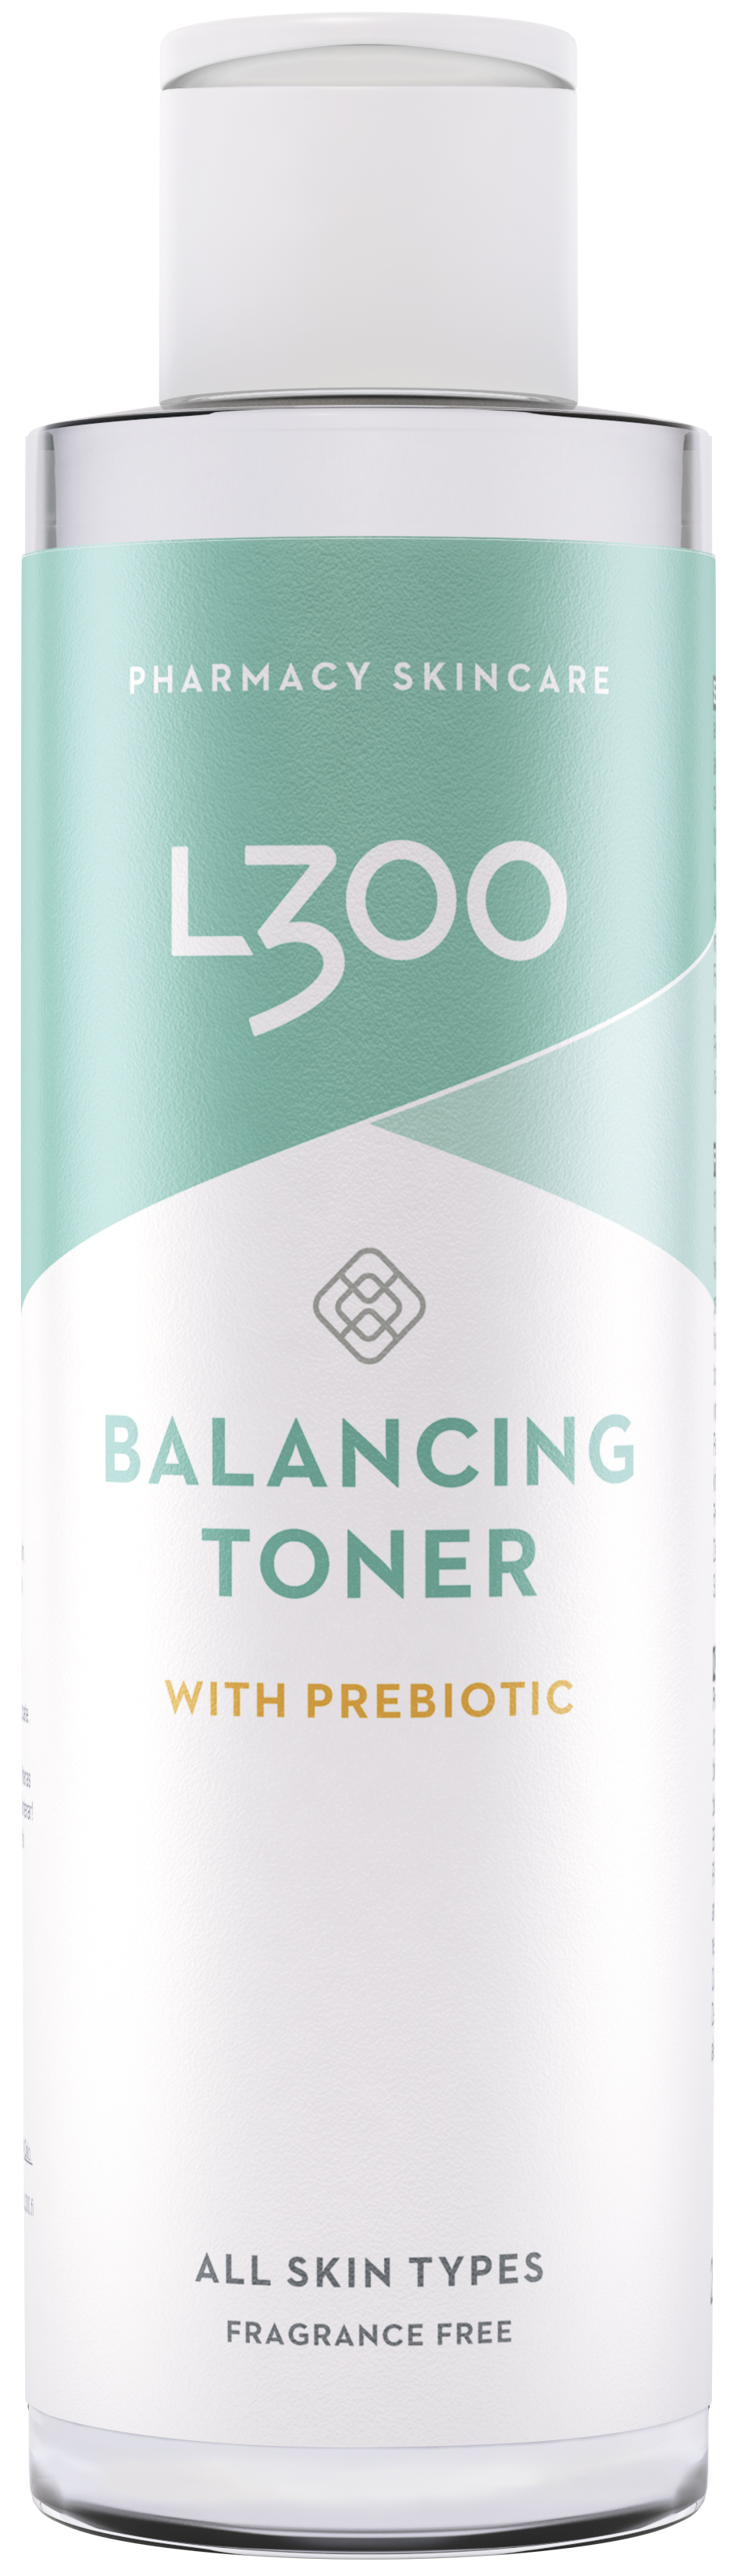 L300 Balancing Toner Prebiotic 200 ml